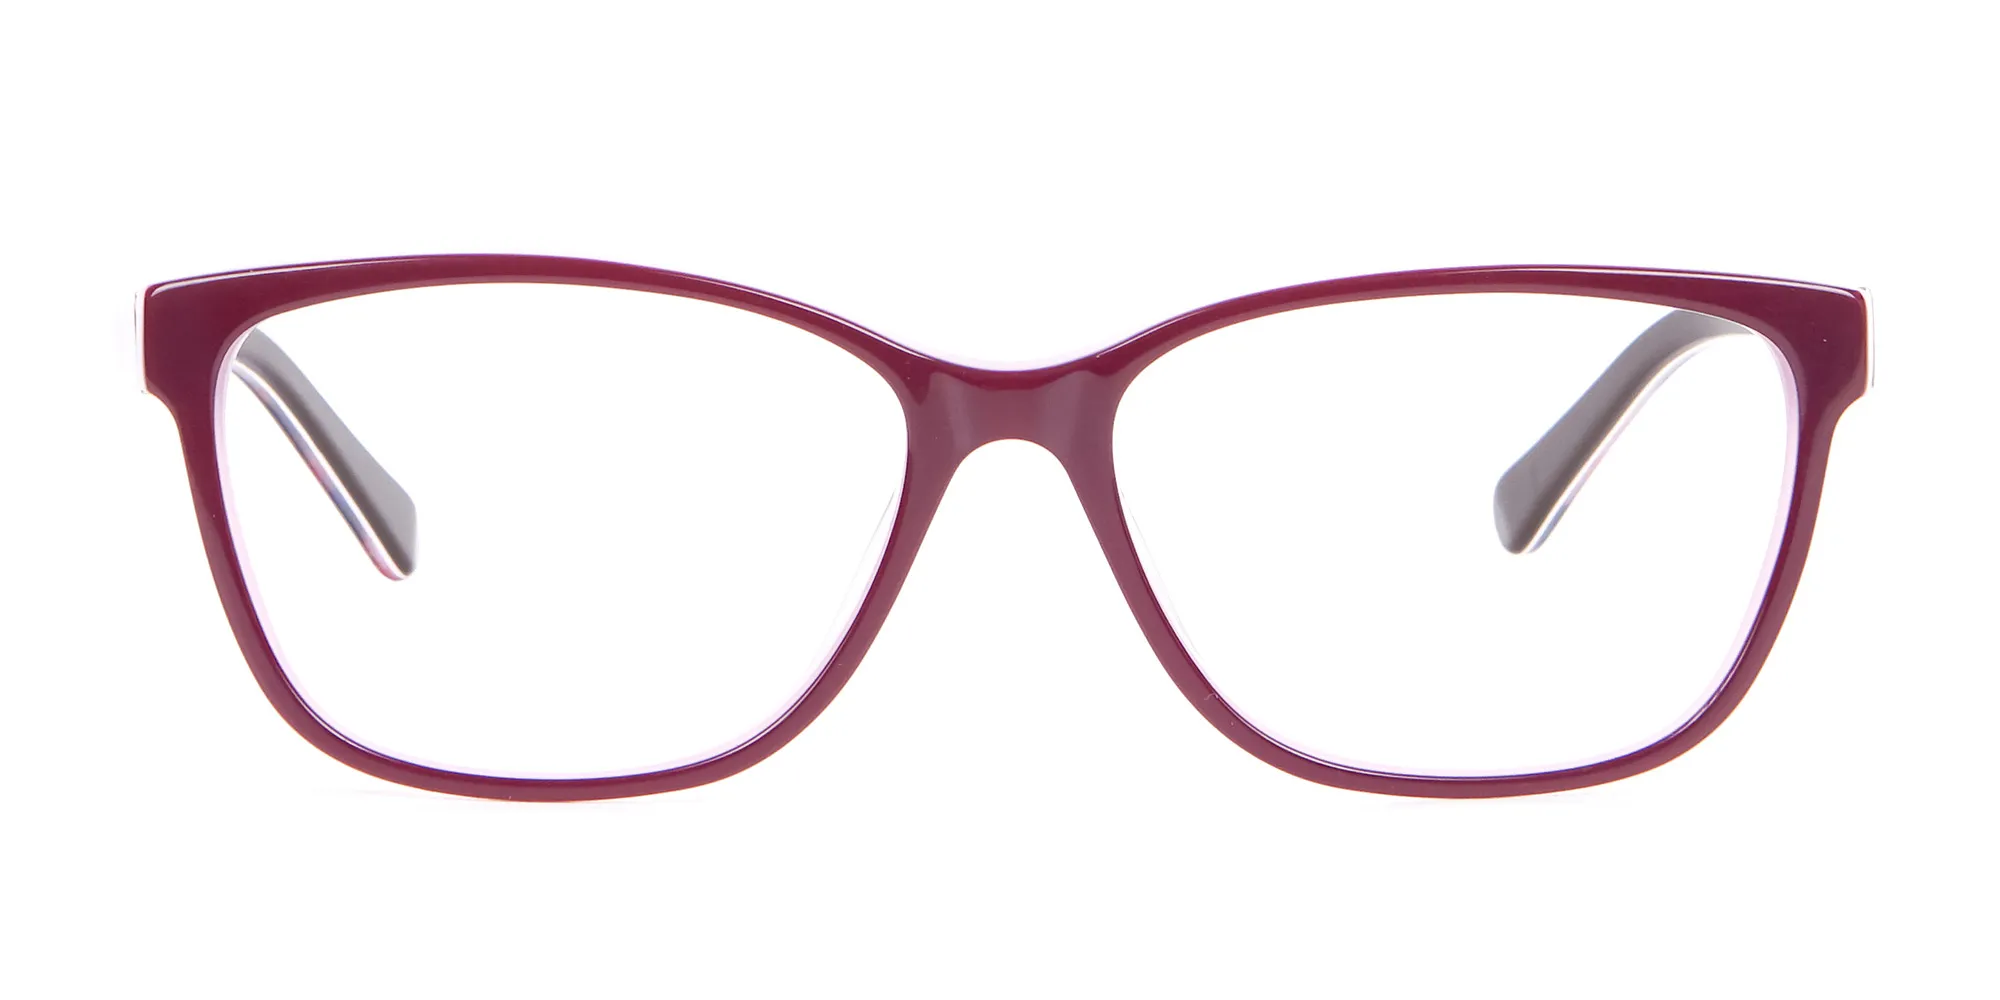 CALAIS 3 (Glasses)